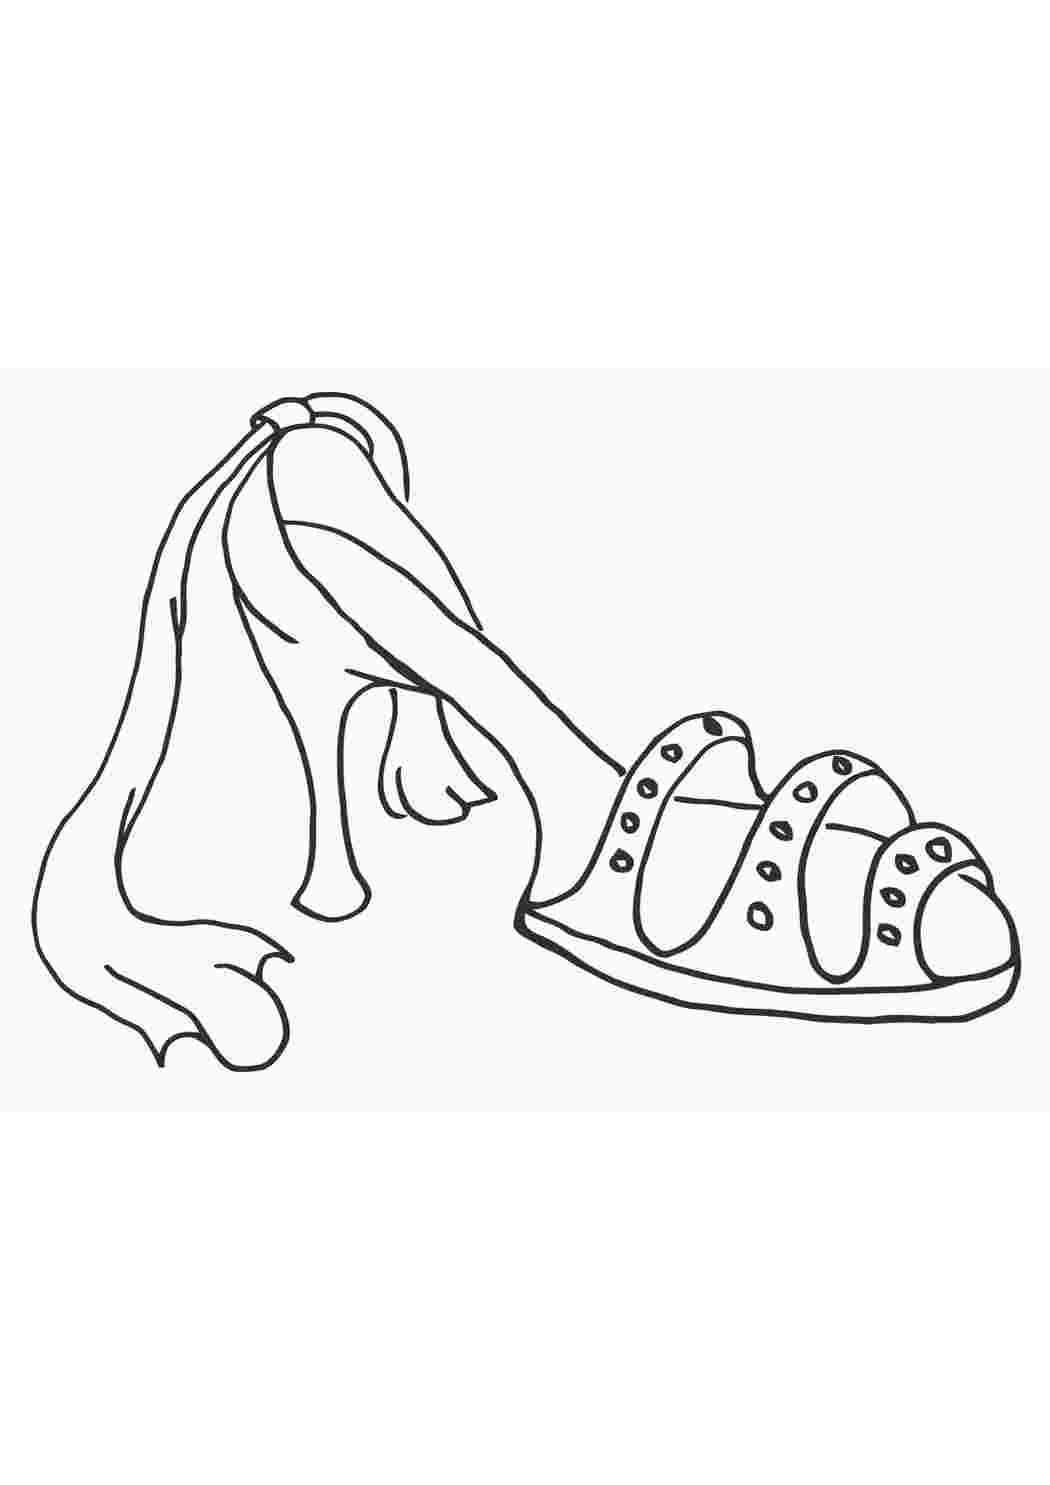 Хрустальная туфелька – все варианты раскрасок